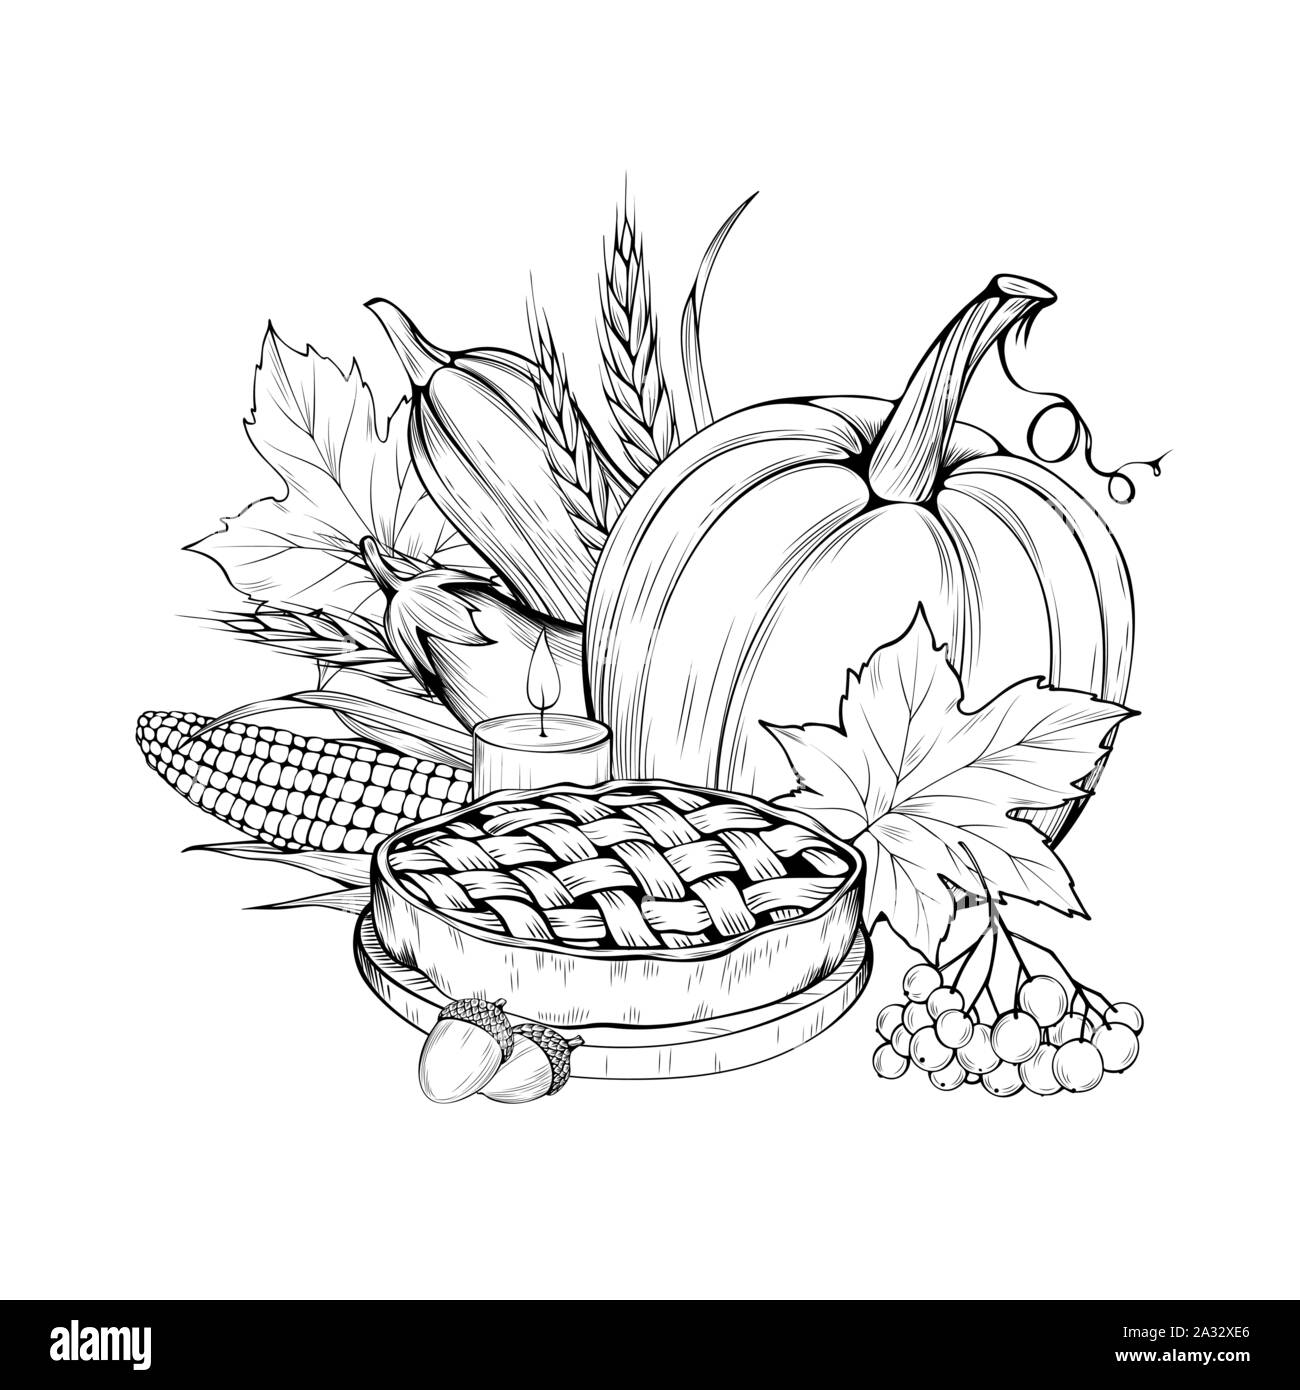 Vegetarisches Essen Hand gezeichnet Vector Illustration. Herbst, Ernte, Thanksgiving Umrisse Symbole. Traditionelles Gebäck und Vegane Torte Zutaten. Natürliche Gemüse Schwarzweiß-Zeichnung Stock Vektor